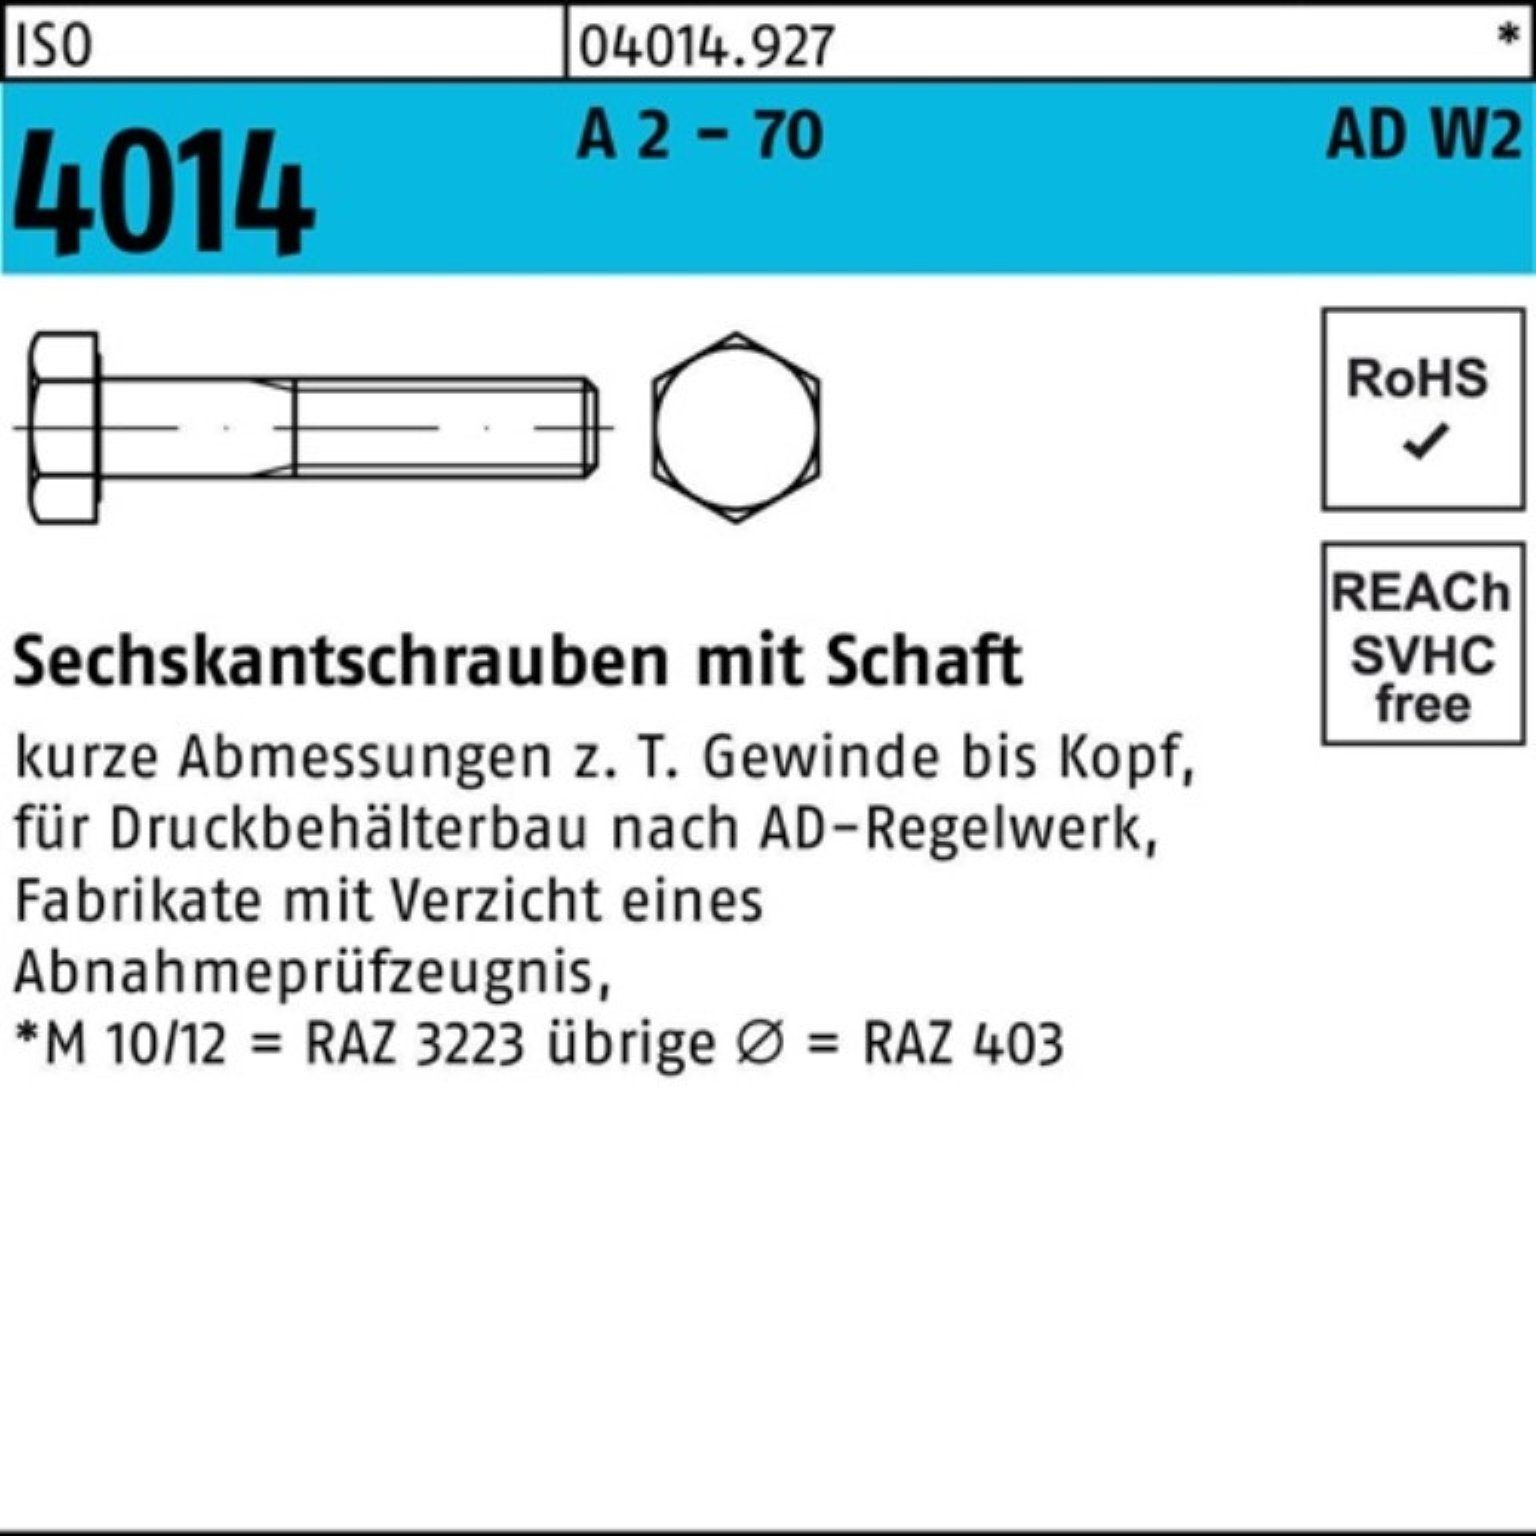 Bufab Sechskantschraube 100er M10x 5 Schaft 70 4014 ISO 2 AD-W2 Sechskantschraube A - 140 Pack